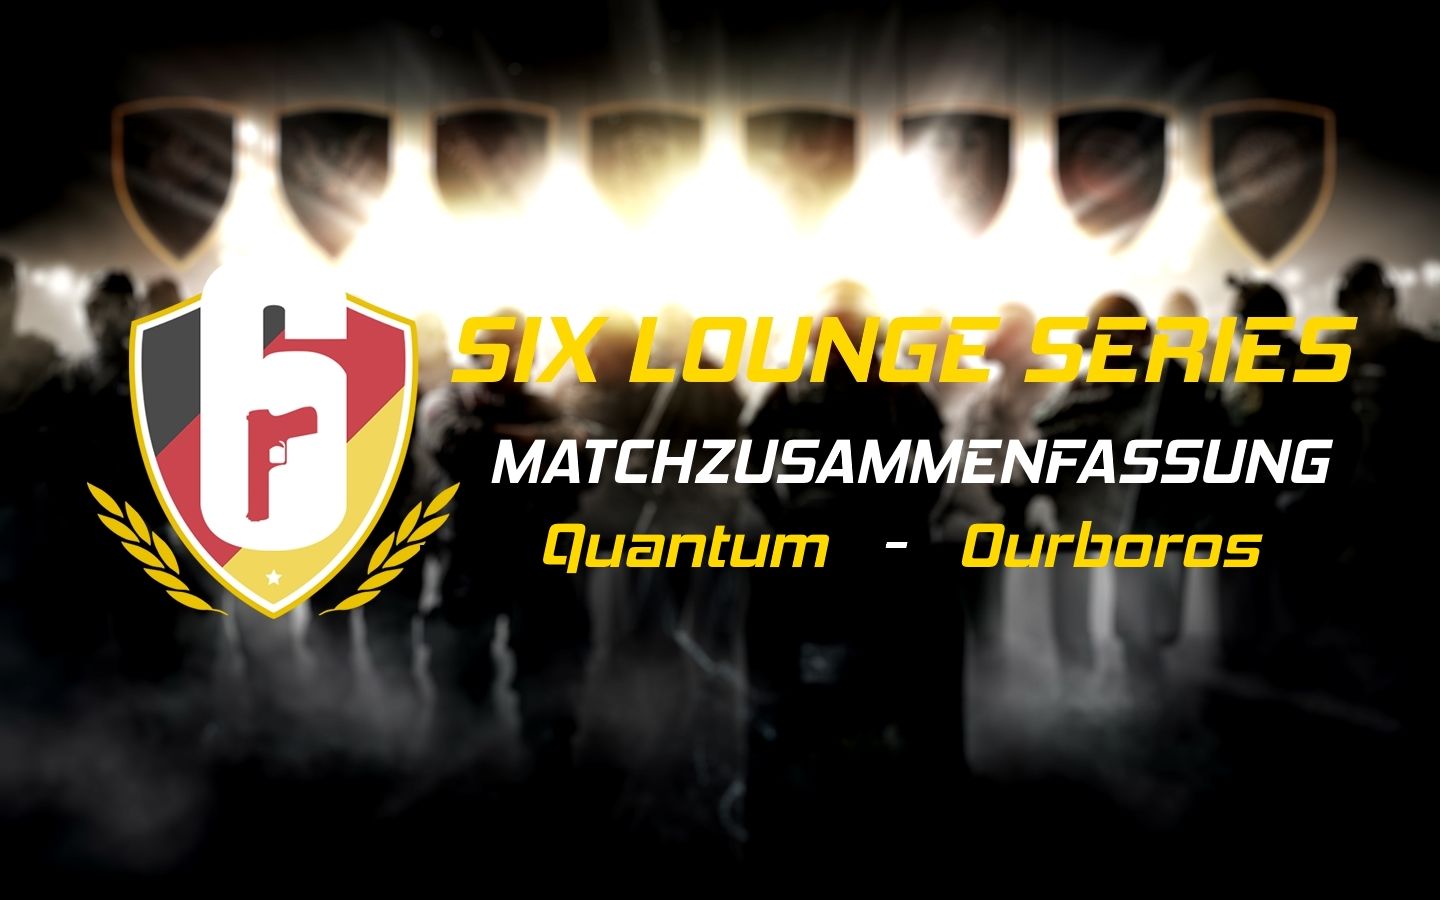 Six Lounge Series | Matchzusammenfassung | Quantum gegen Ourboros